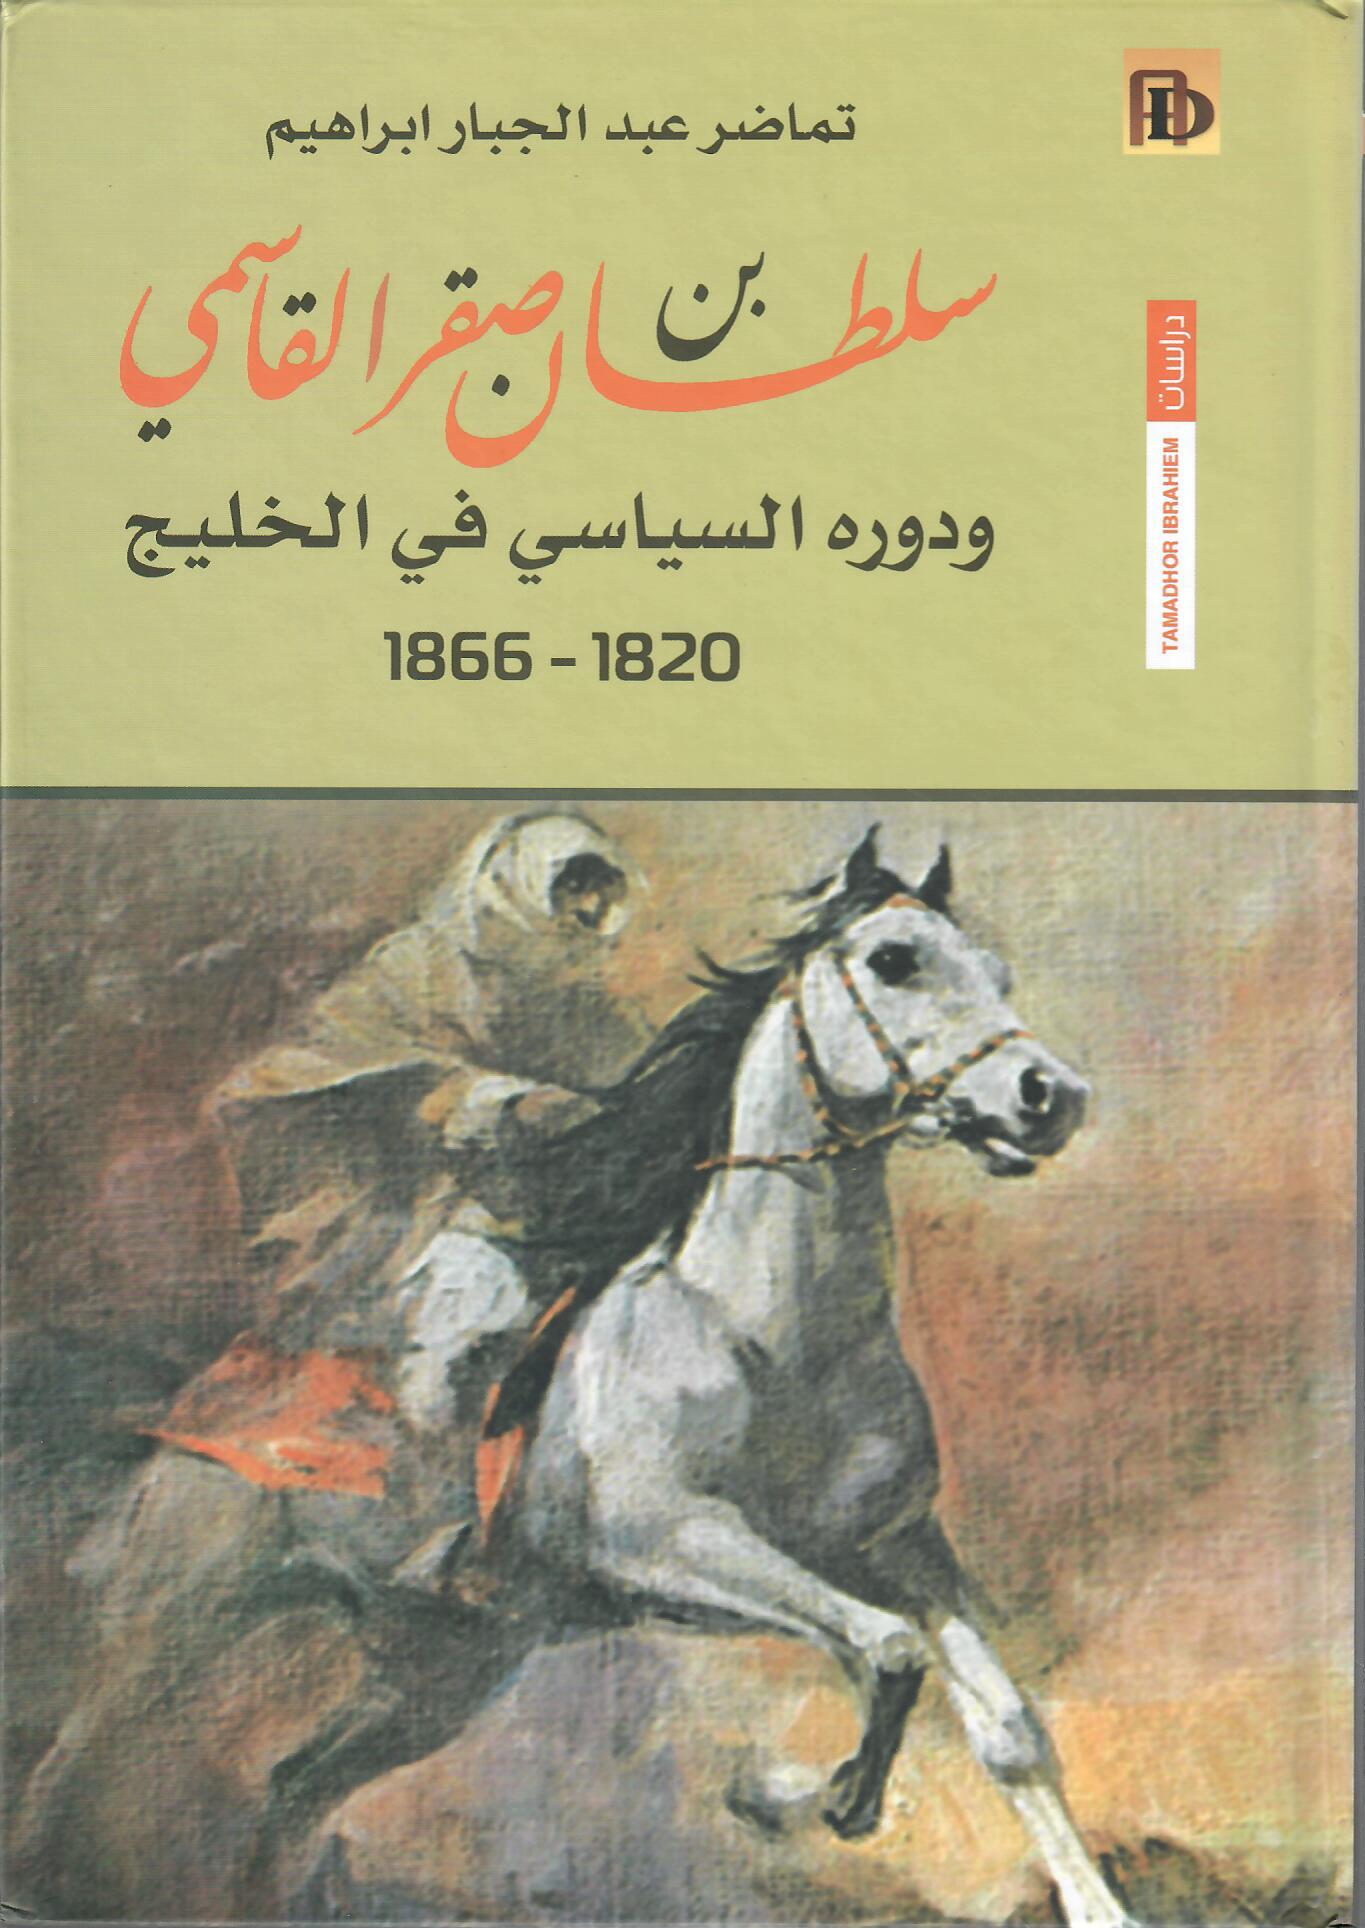 سلطان بن صقر القاسمي ودوره السياسي في الخليج 1820 - 1866